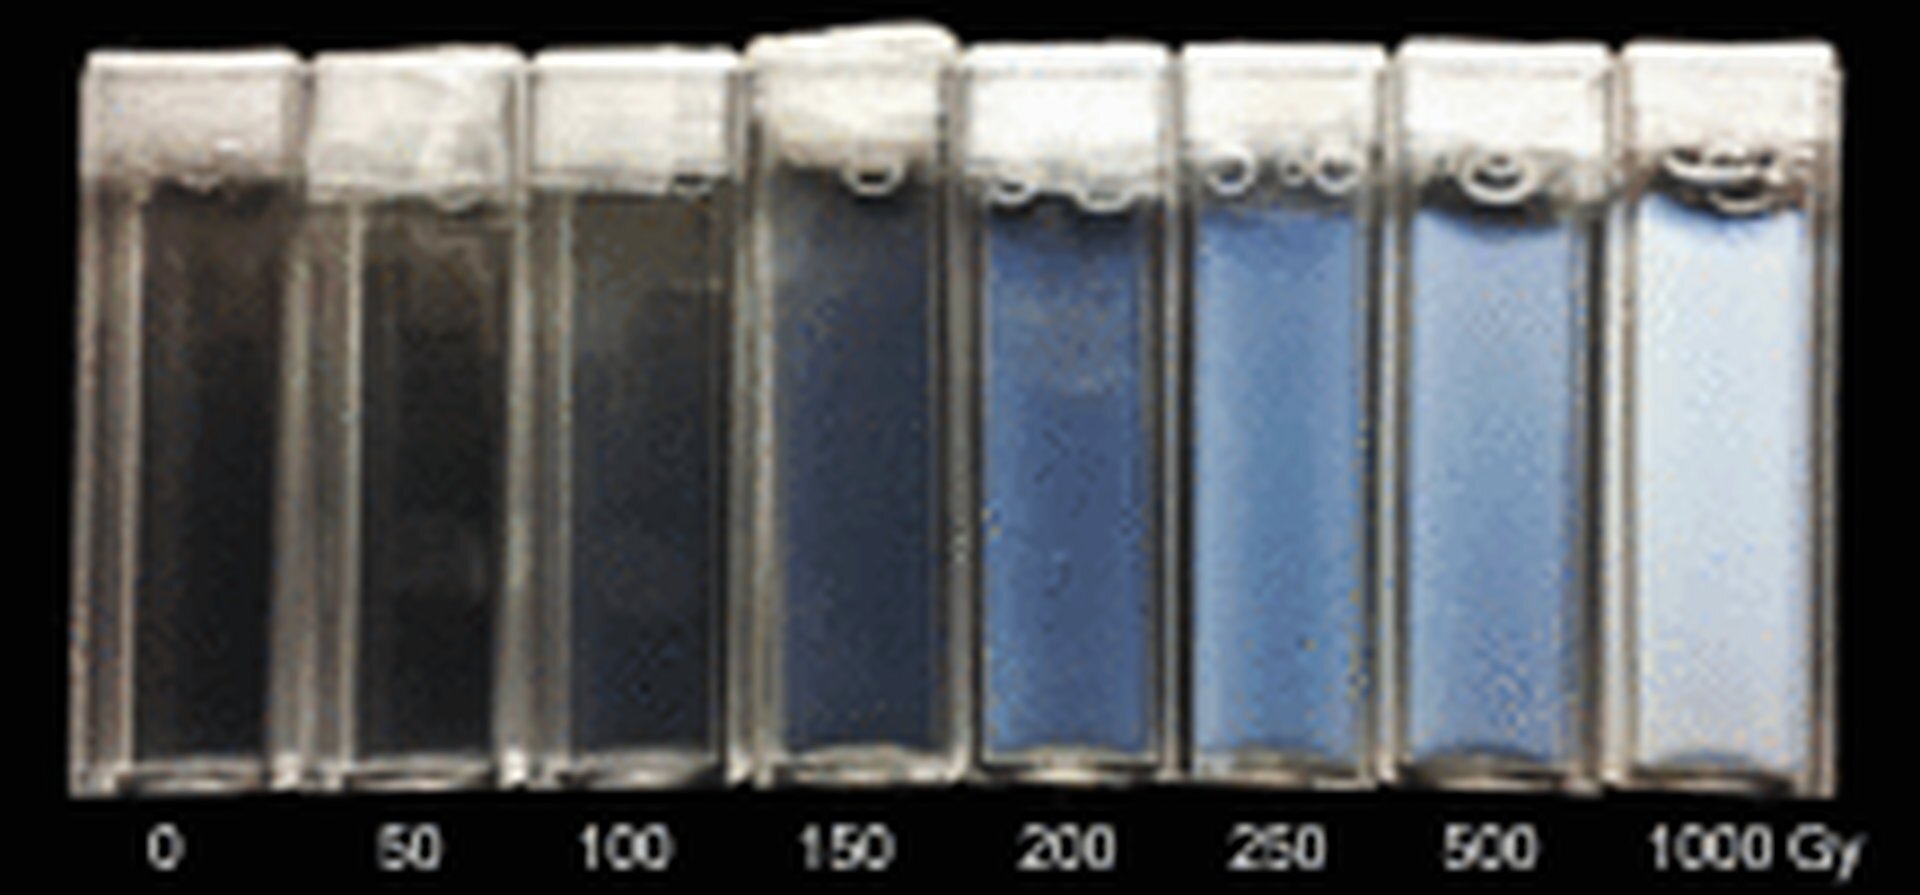 Rys. 7c. przedstawia detektory chemiczne w postaci pojemników z żelem dozymetrycznym na czarnym tle. Pojemniki mają kształt probówek z białym koreczkami u góry. Barwa żelu w środku pojemników zmienia się – od lewej żel jest niemal przezroczysty, następnie przechodzi w barwę niebieską do jasnoniebieskiej. Pod pojemnikami zapis ośmiu dawek promieniowania: 0, 50, 150, 200, 250, 500, 1000 Gy.